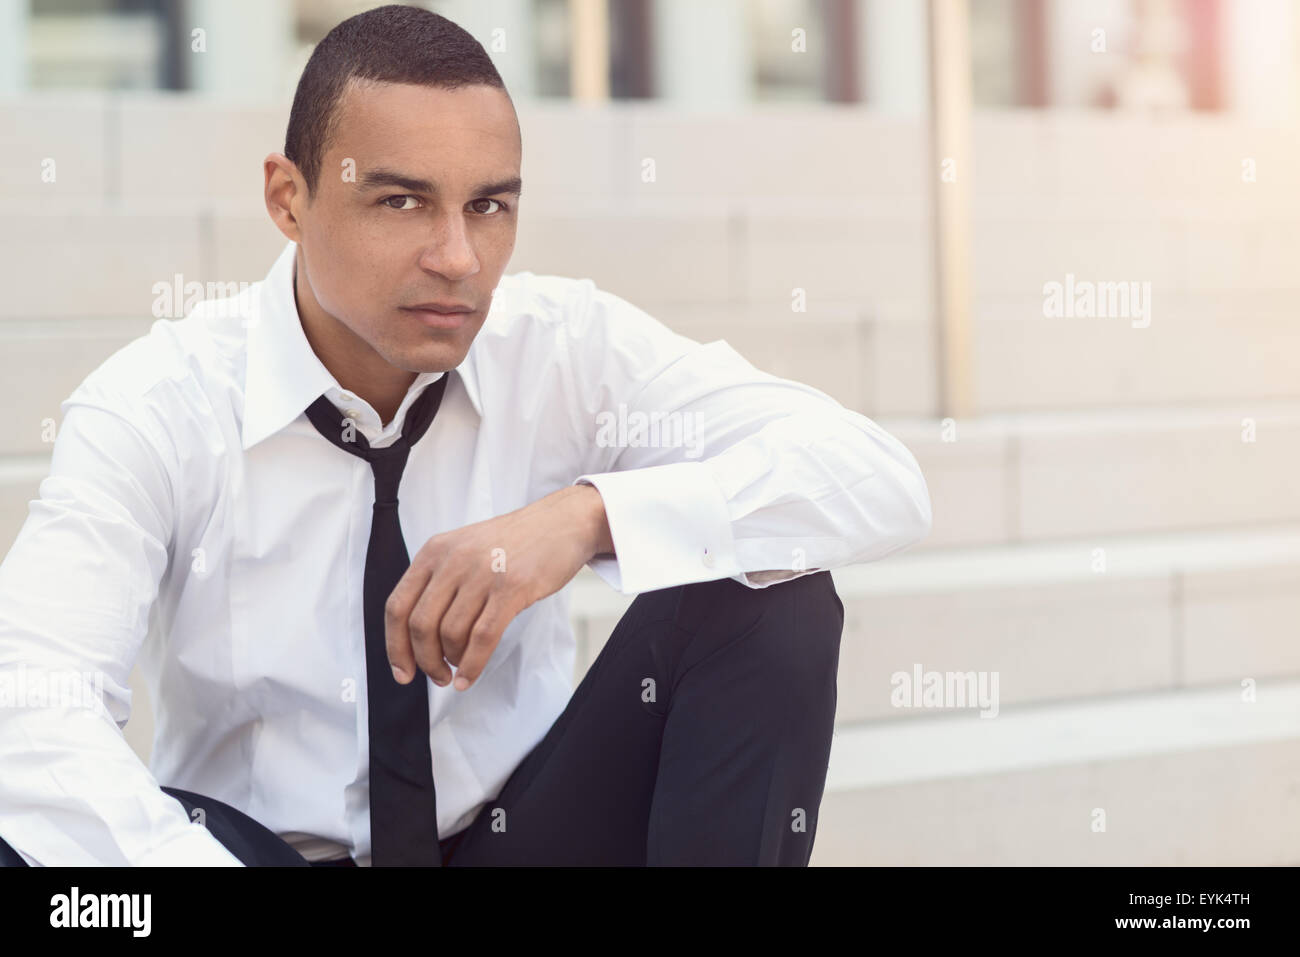 Homme d'affaires attrayant avec une cravate desserrée et déboutonna son col regardant la caméra, gros plan de la tête et des épaules Banque D'Images